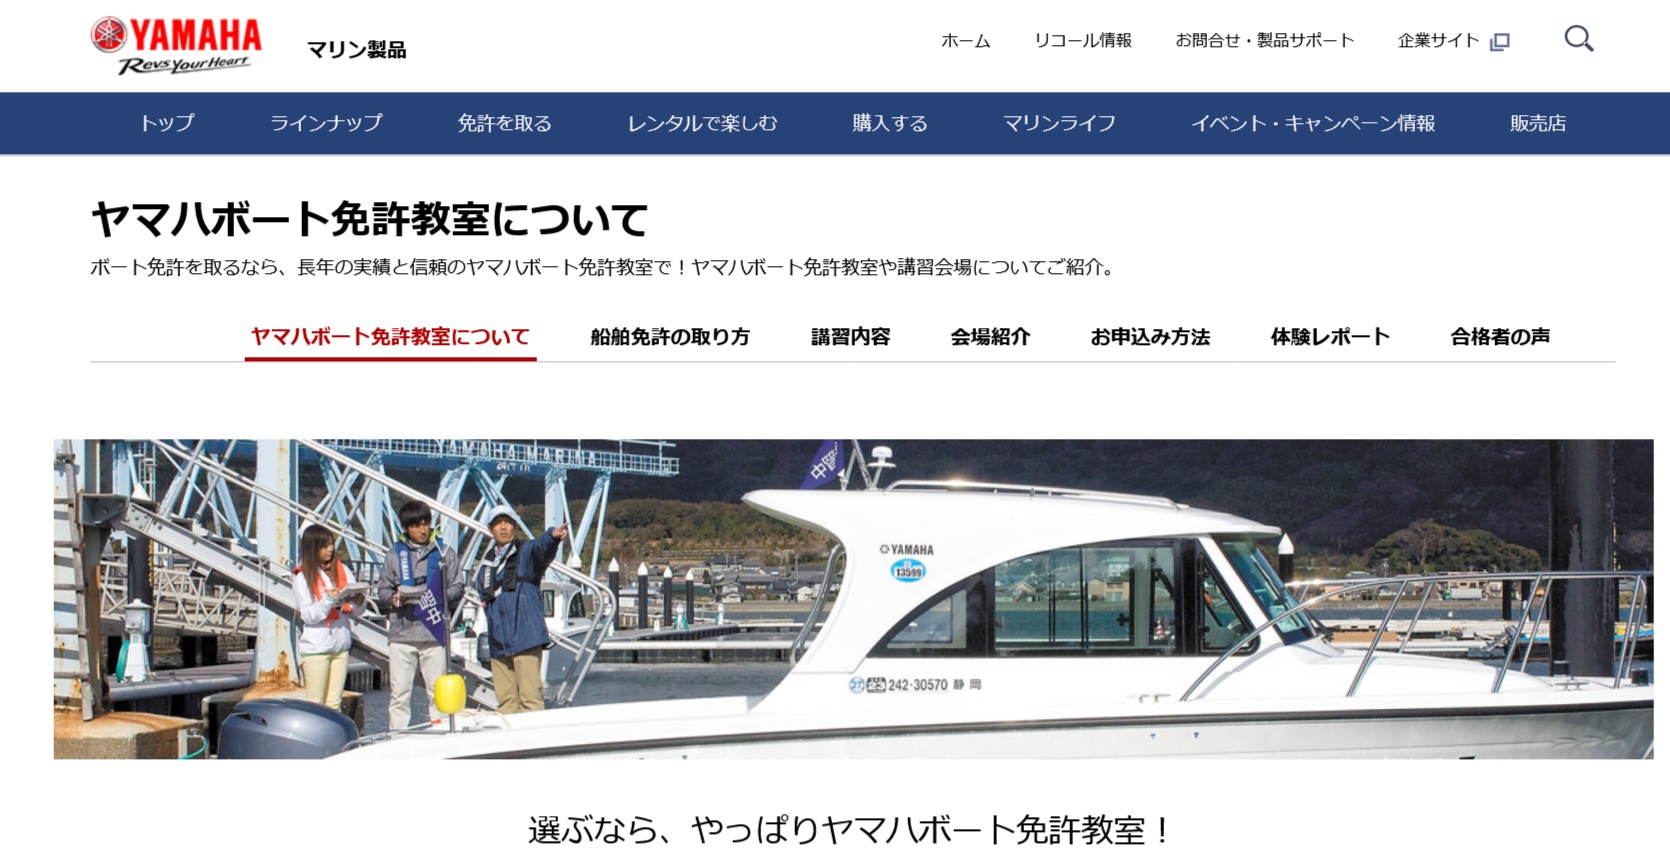 大阪府 ヤマハボート免許センター西日本で小型船舶免許を取得